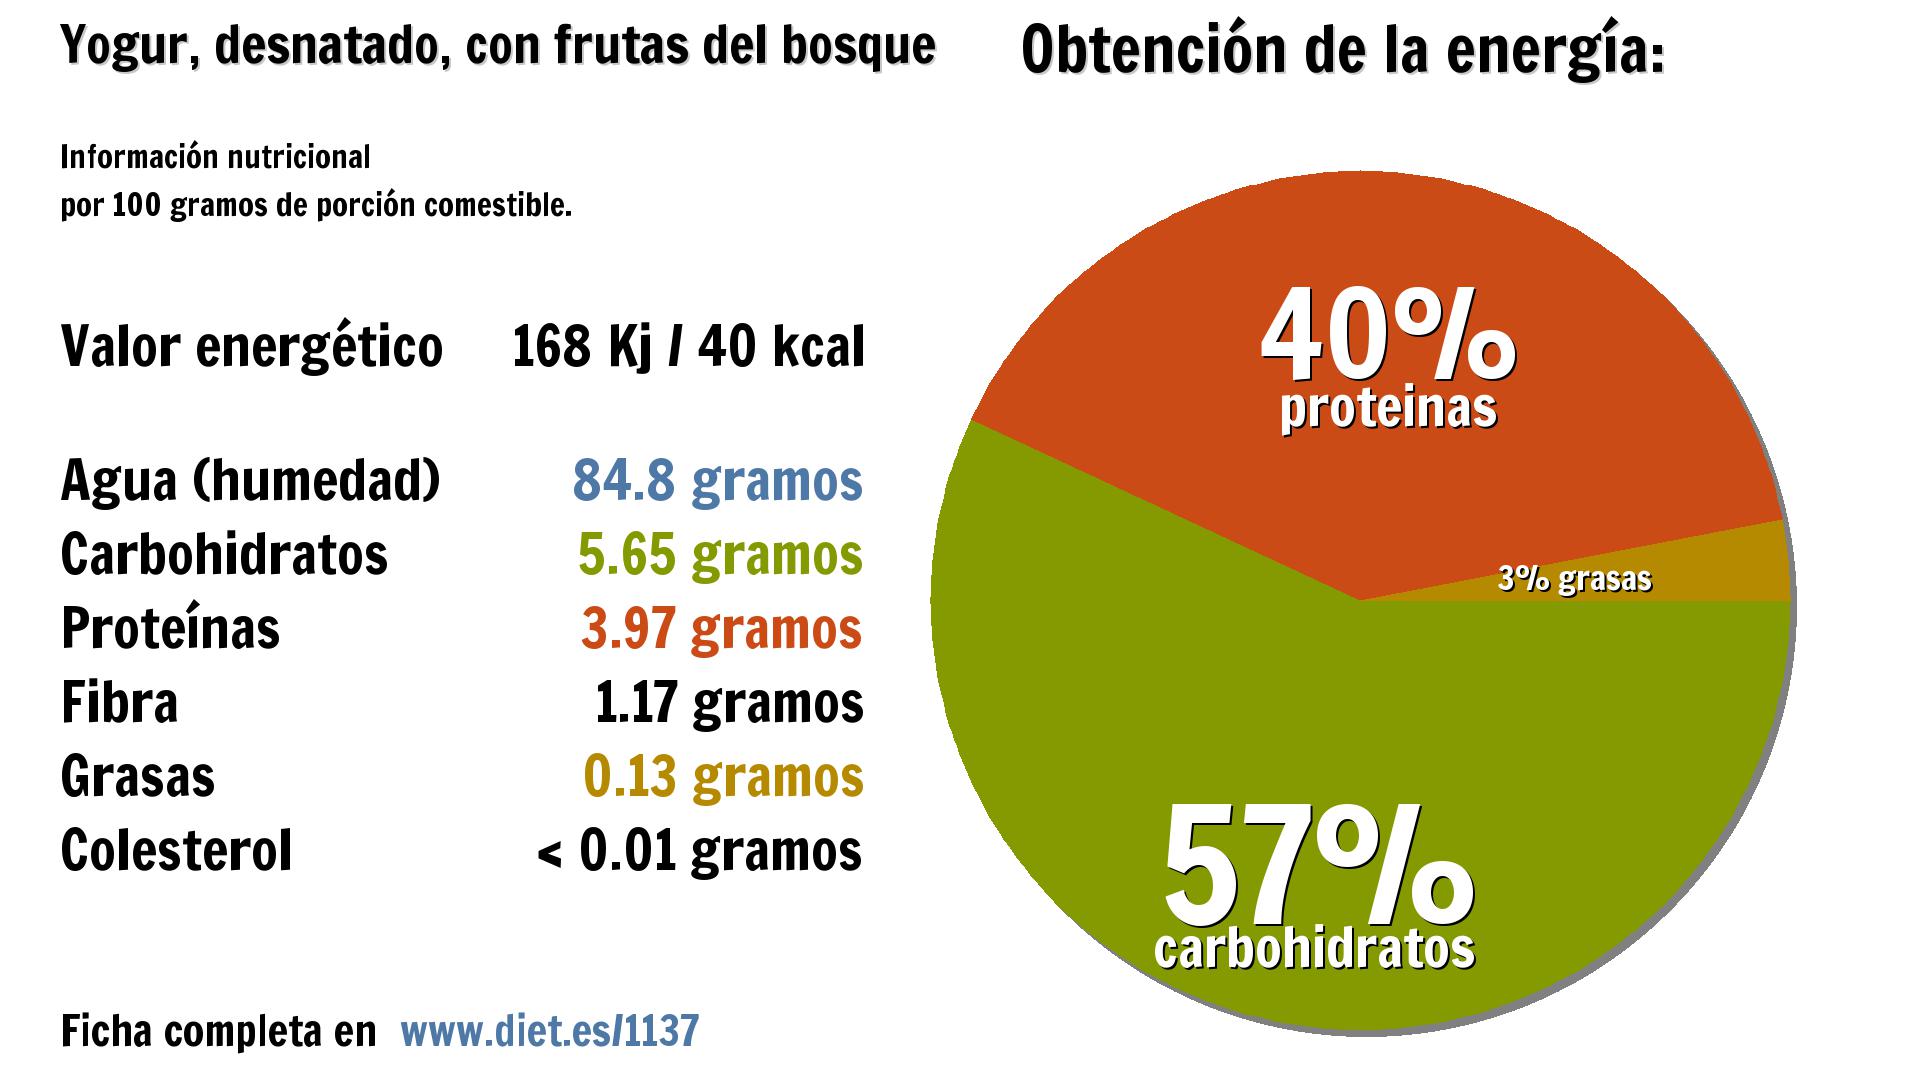 Yogur, desnatado, con frutas del bosque: energía 168 Kj, agua 85 g., carbohidratos 6 g., proteínas 4 g. y fibra 1 g.